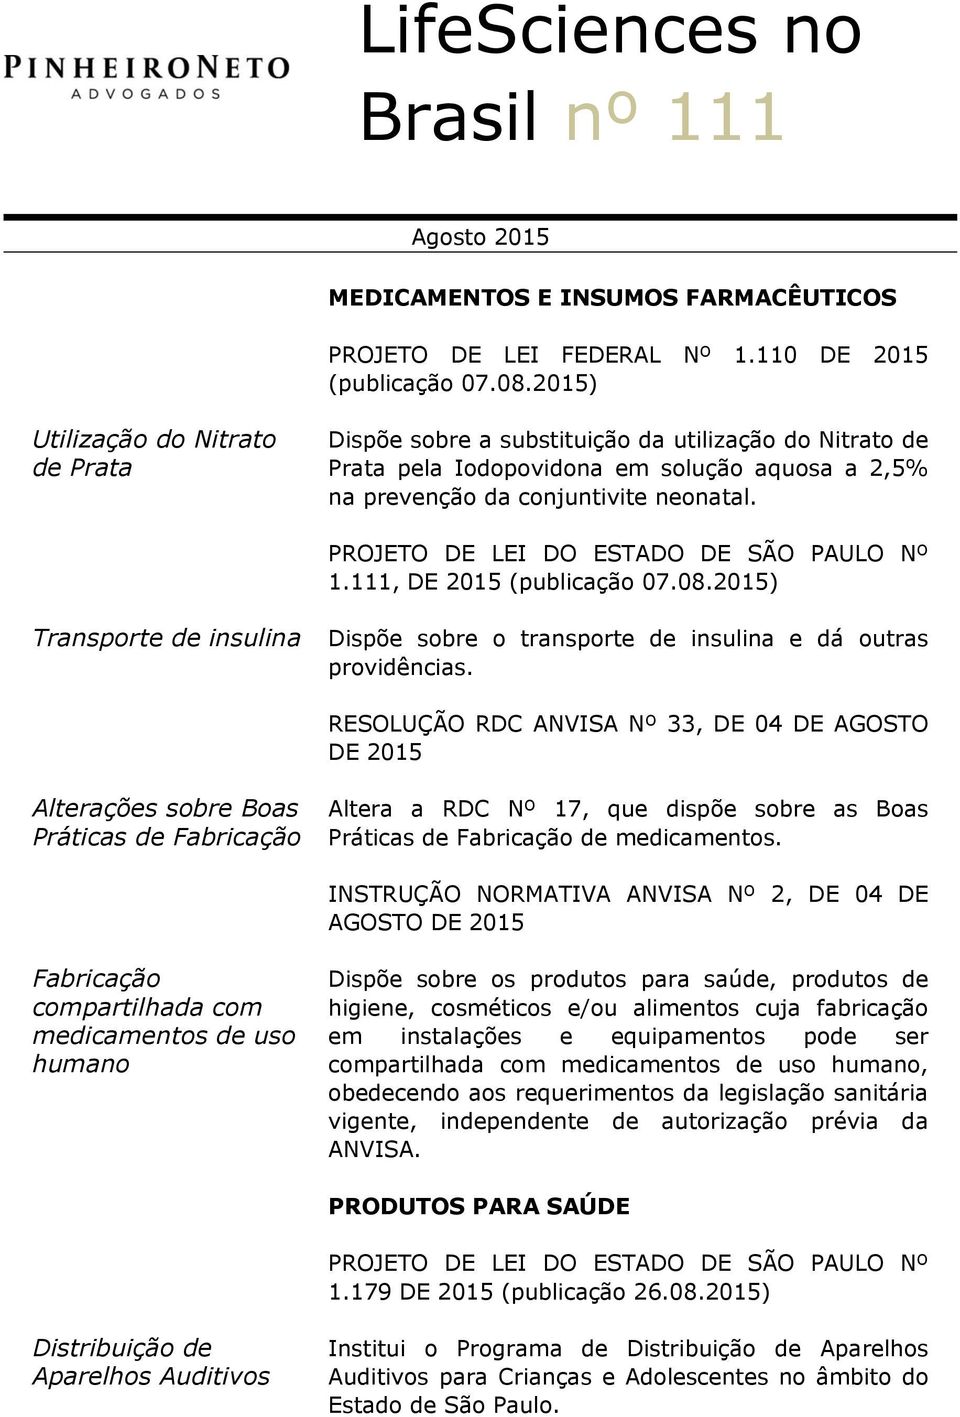 PROJETO DE LEI DO ESTADO DE SÃO PAULO Nº 1.111, DE 2015 (publicação 07.08.2015) Transporte de insulina Dispõe sobre o transporte de insulina e dá outras providências.